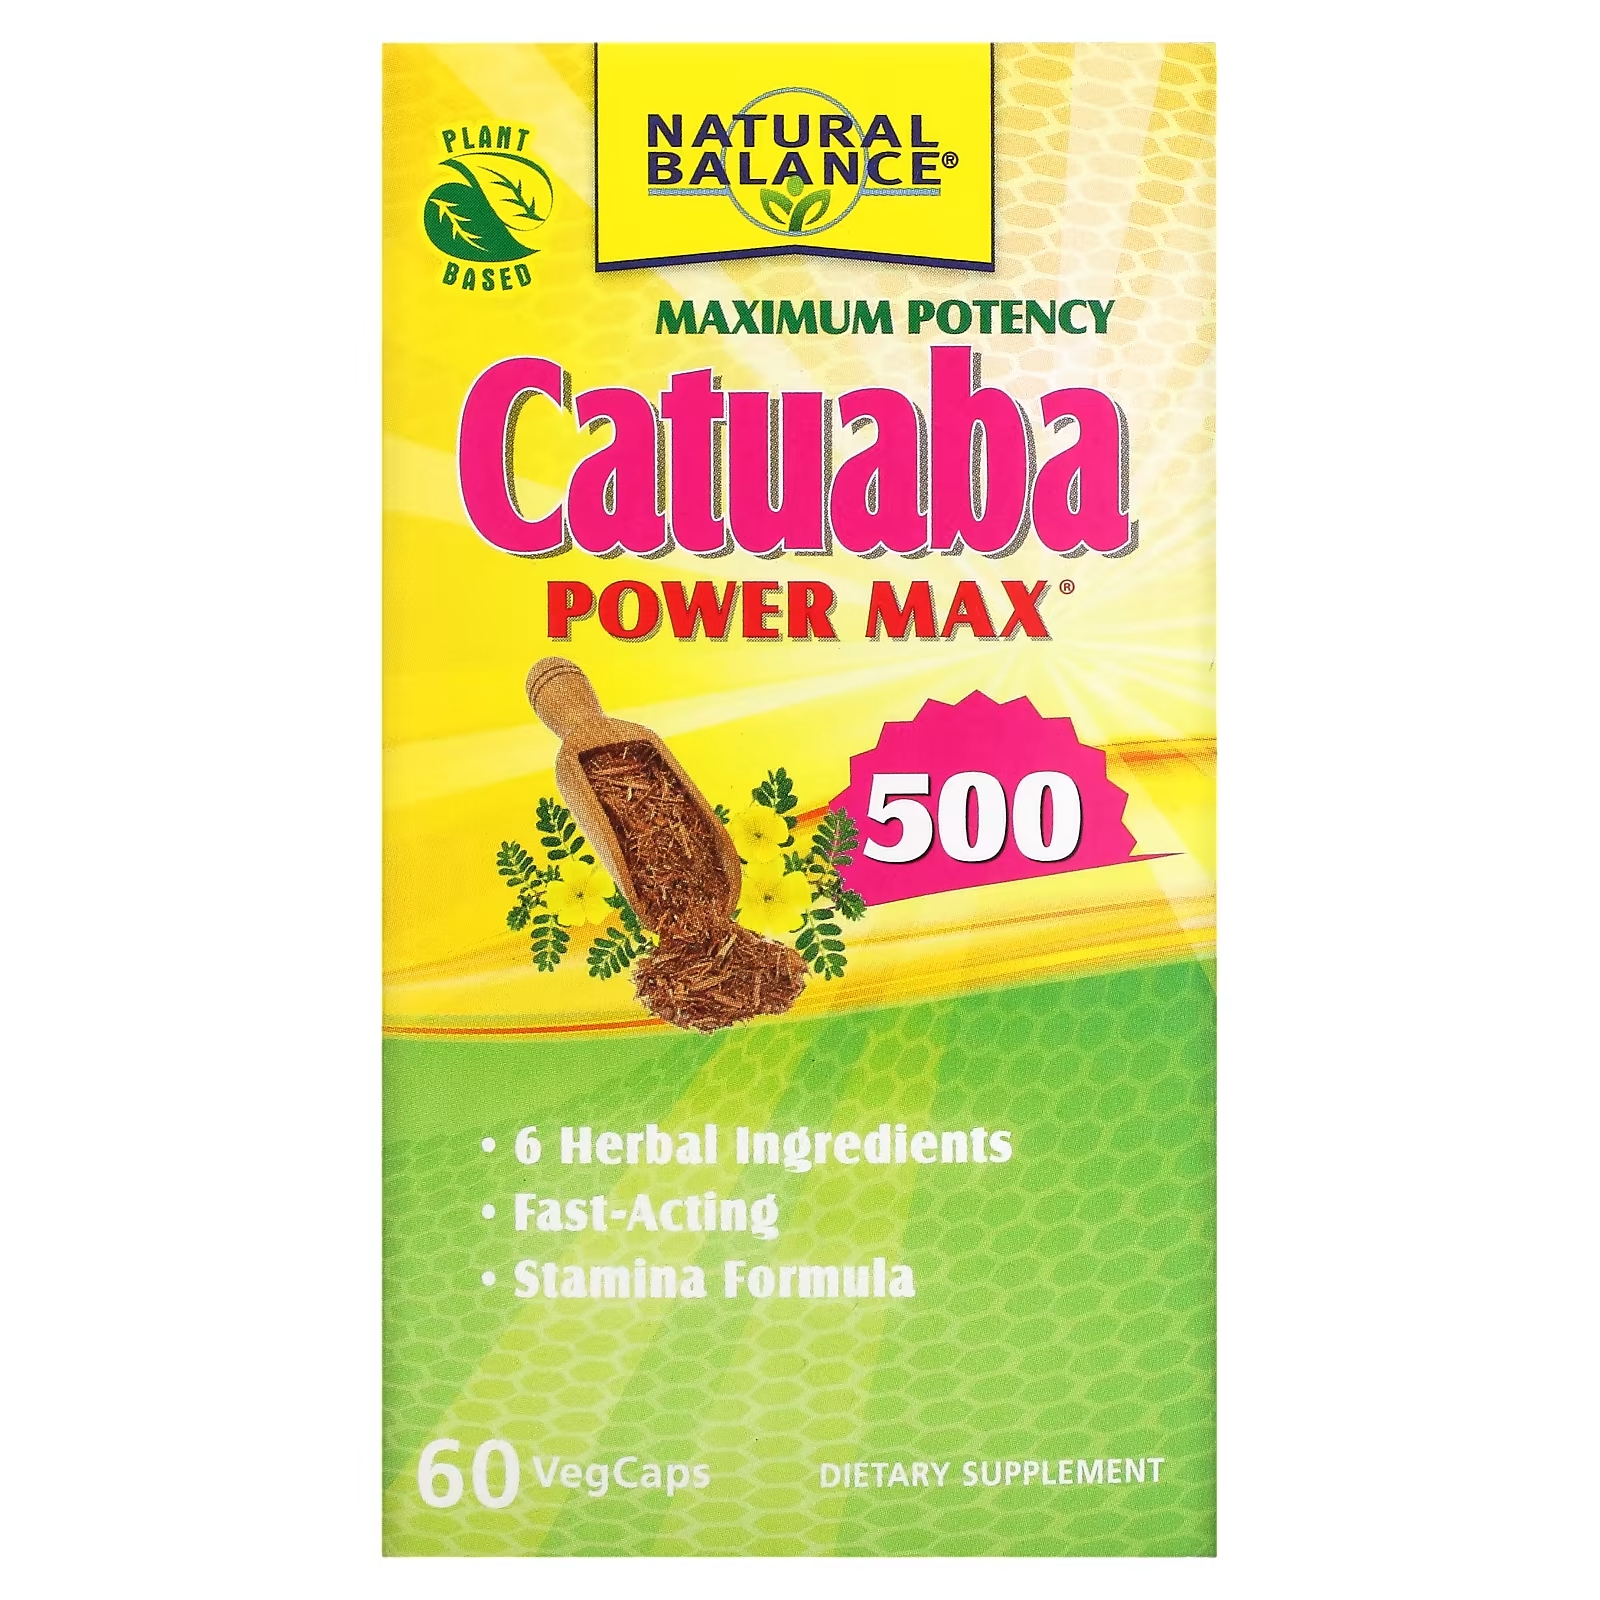 Natural Balance Катуаба Power Max 500 максимальная эффективность, 60 растительных капсул формула баланса жидкости natural balance bloat x 60 растительных капсул